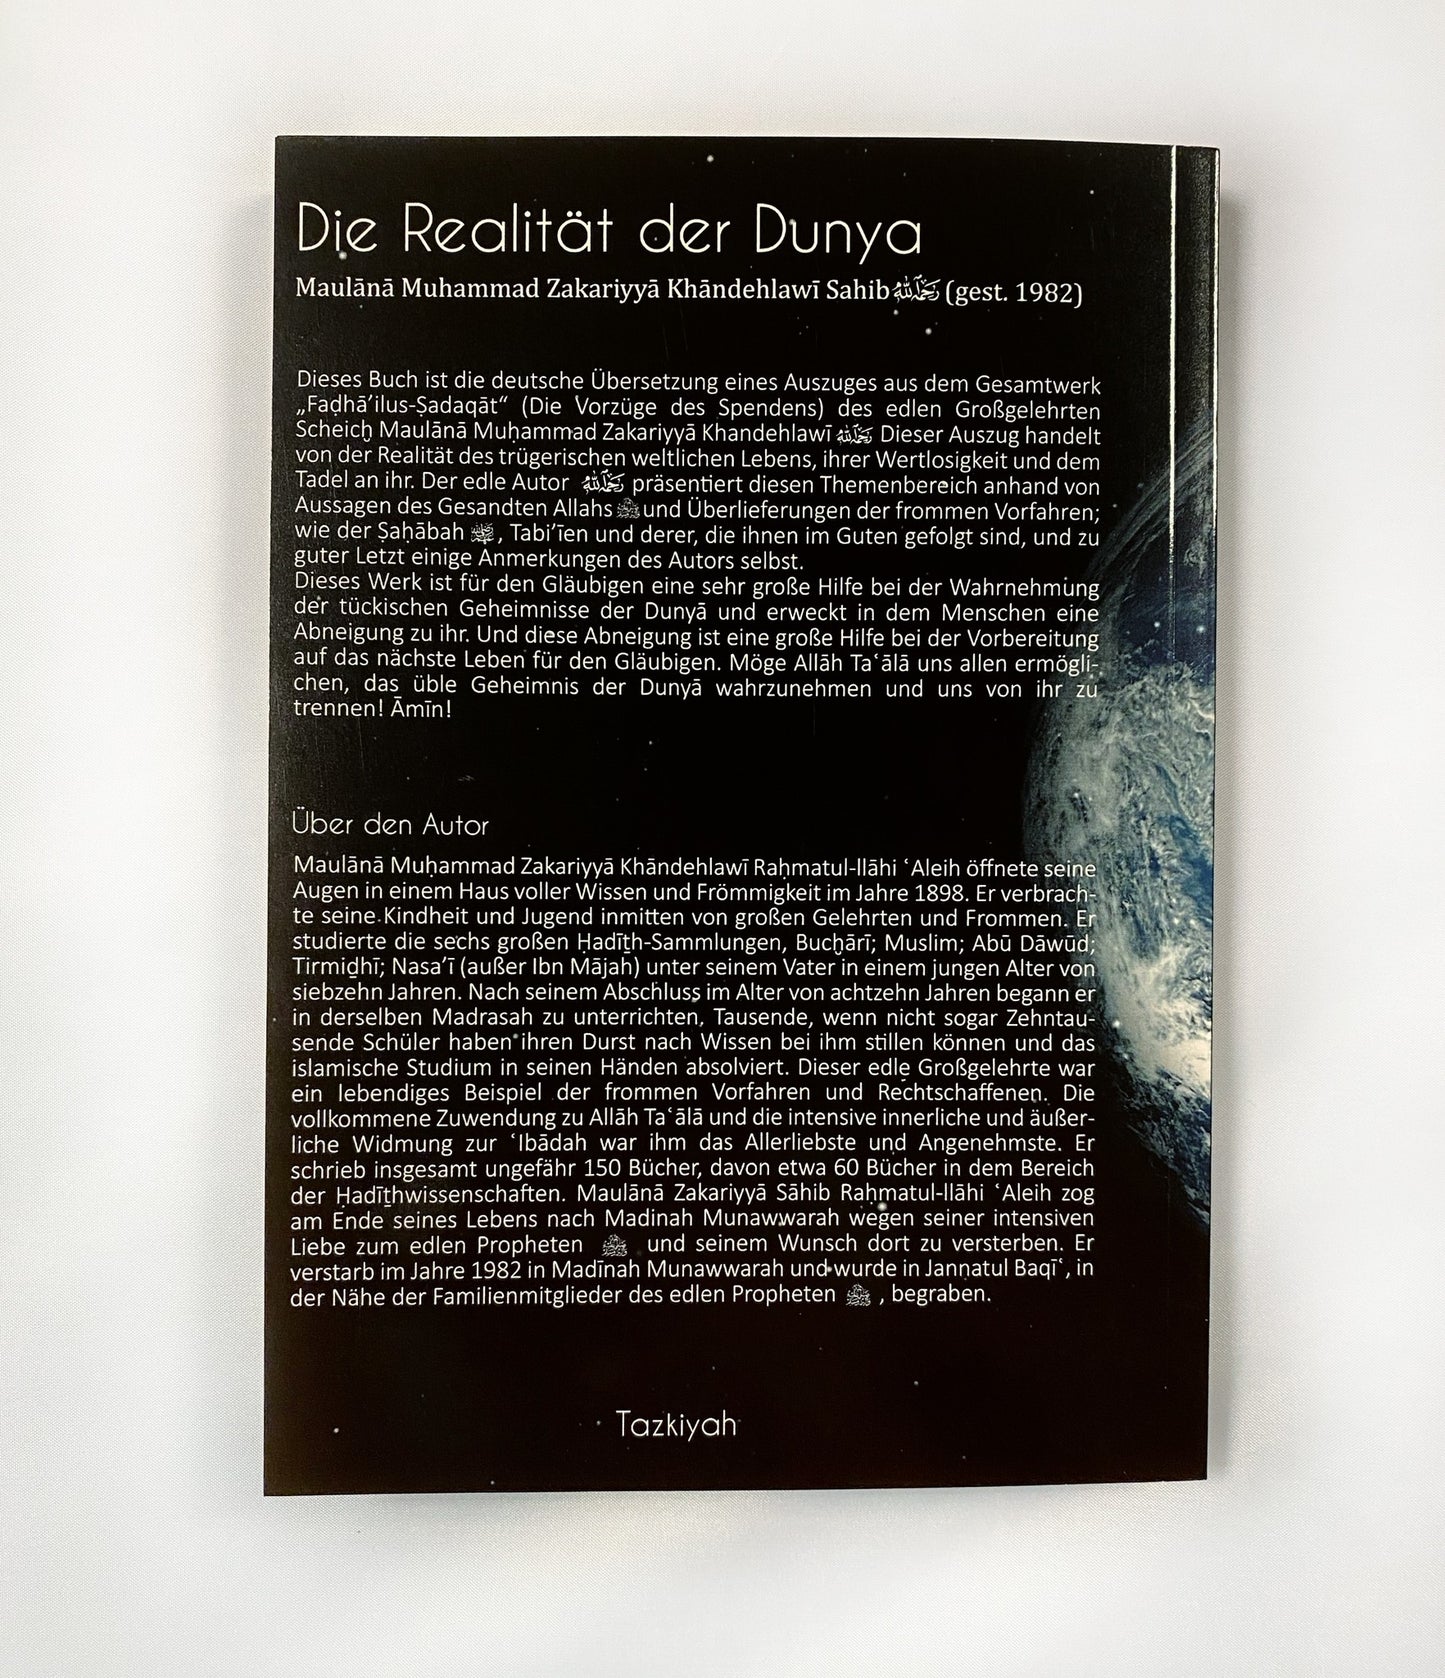 Die Realität der Dunya